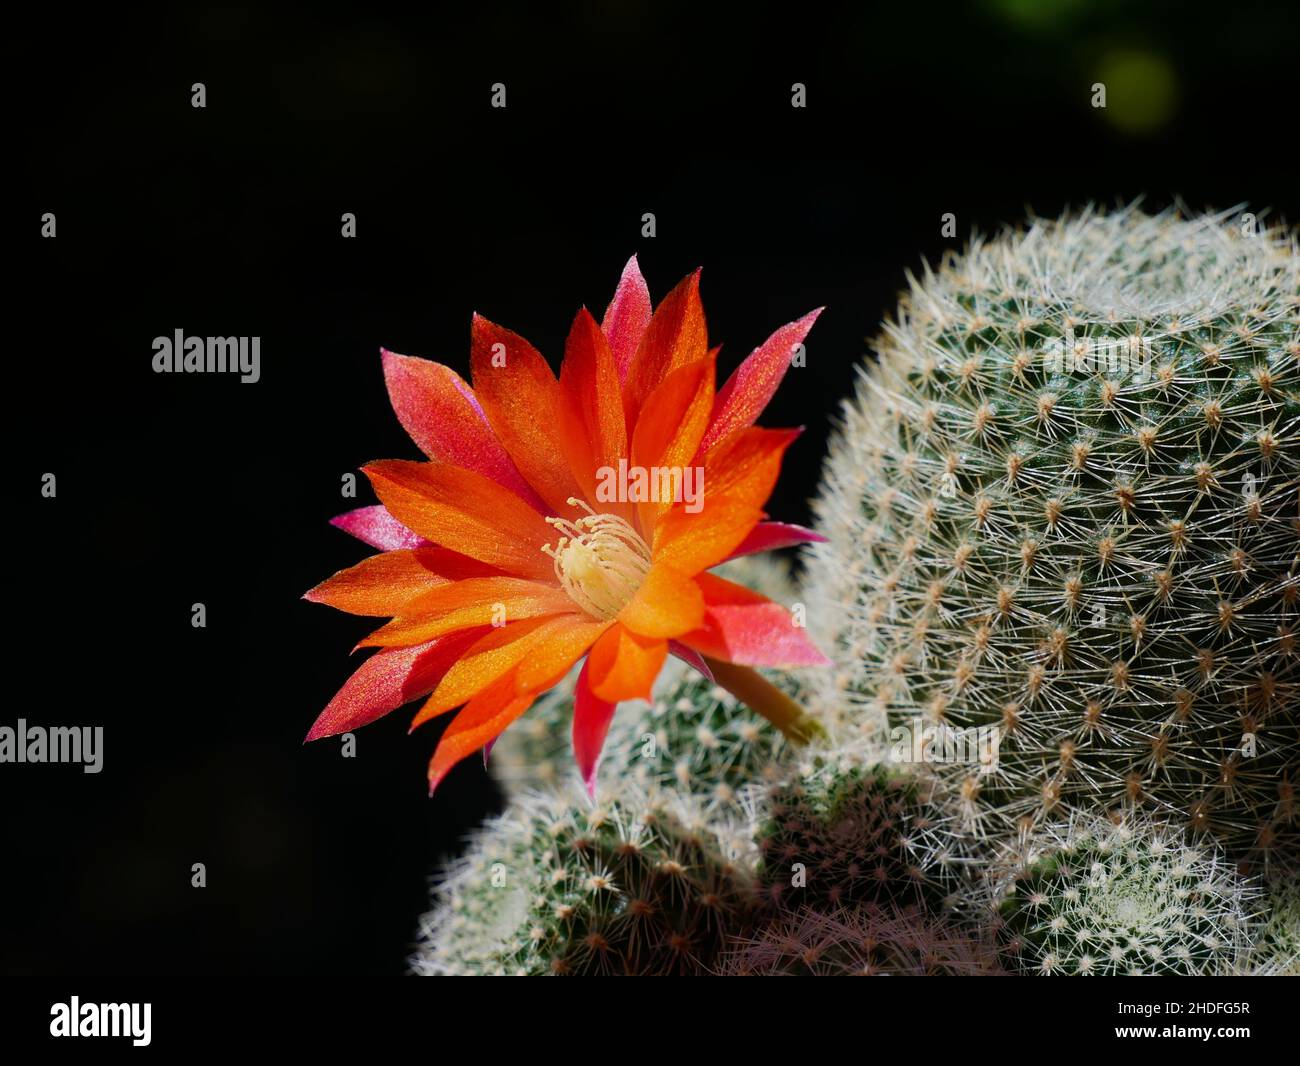 Red blossom of Rebutia cactus Stock Photo